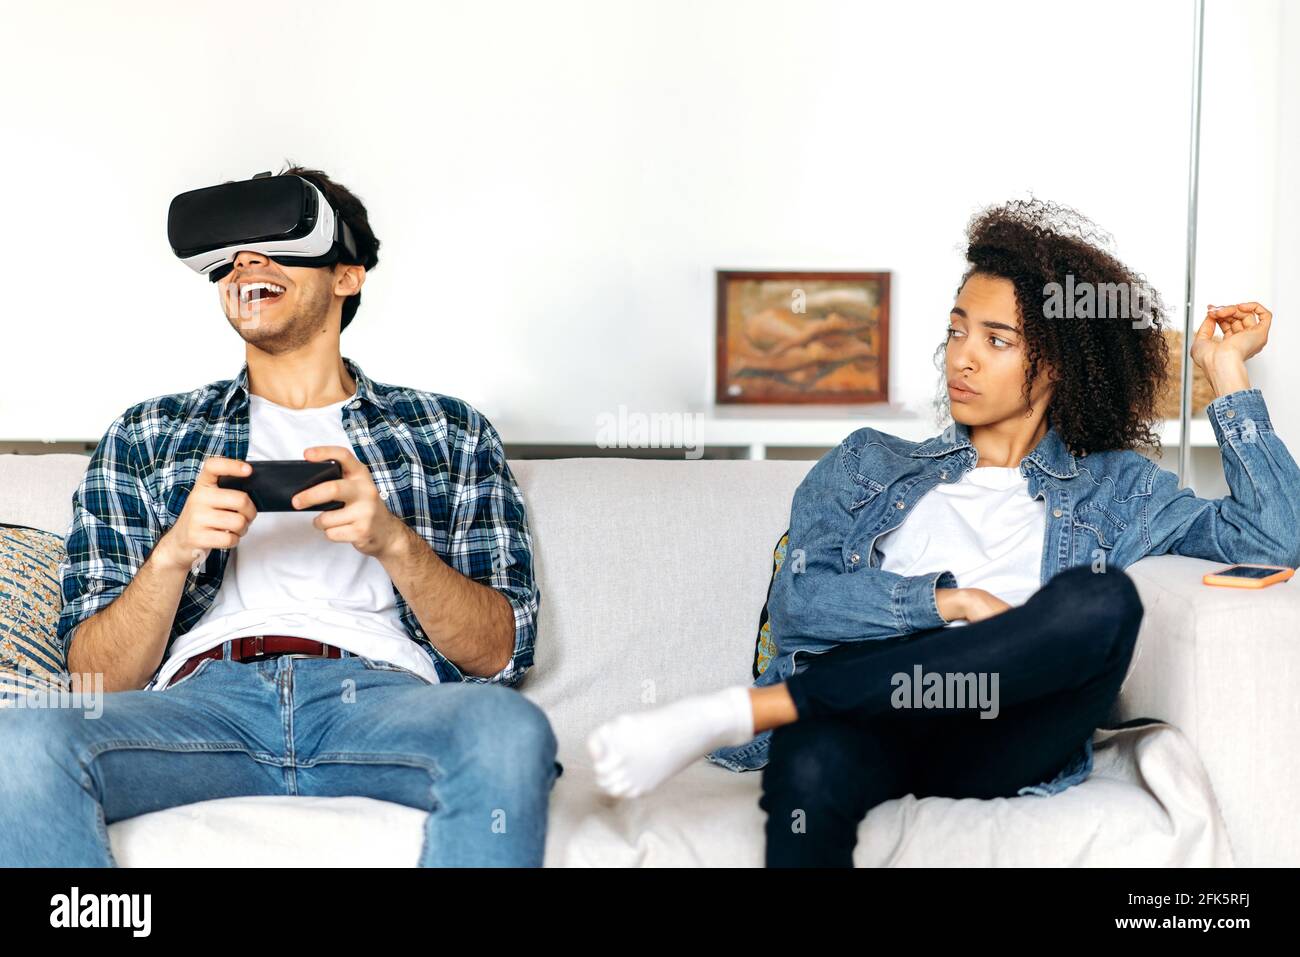 La coppia sposata è seduta sul divano, il ragazzo eccitato utilizza gli occhiali per smartphone e VR, gioca a giochi virtuali, la ragazza afroamericana si annoia e lo guarda indignato Foto Stock